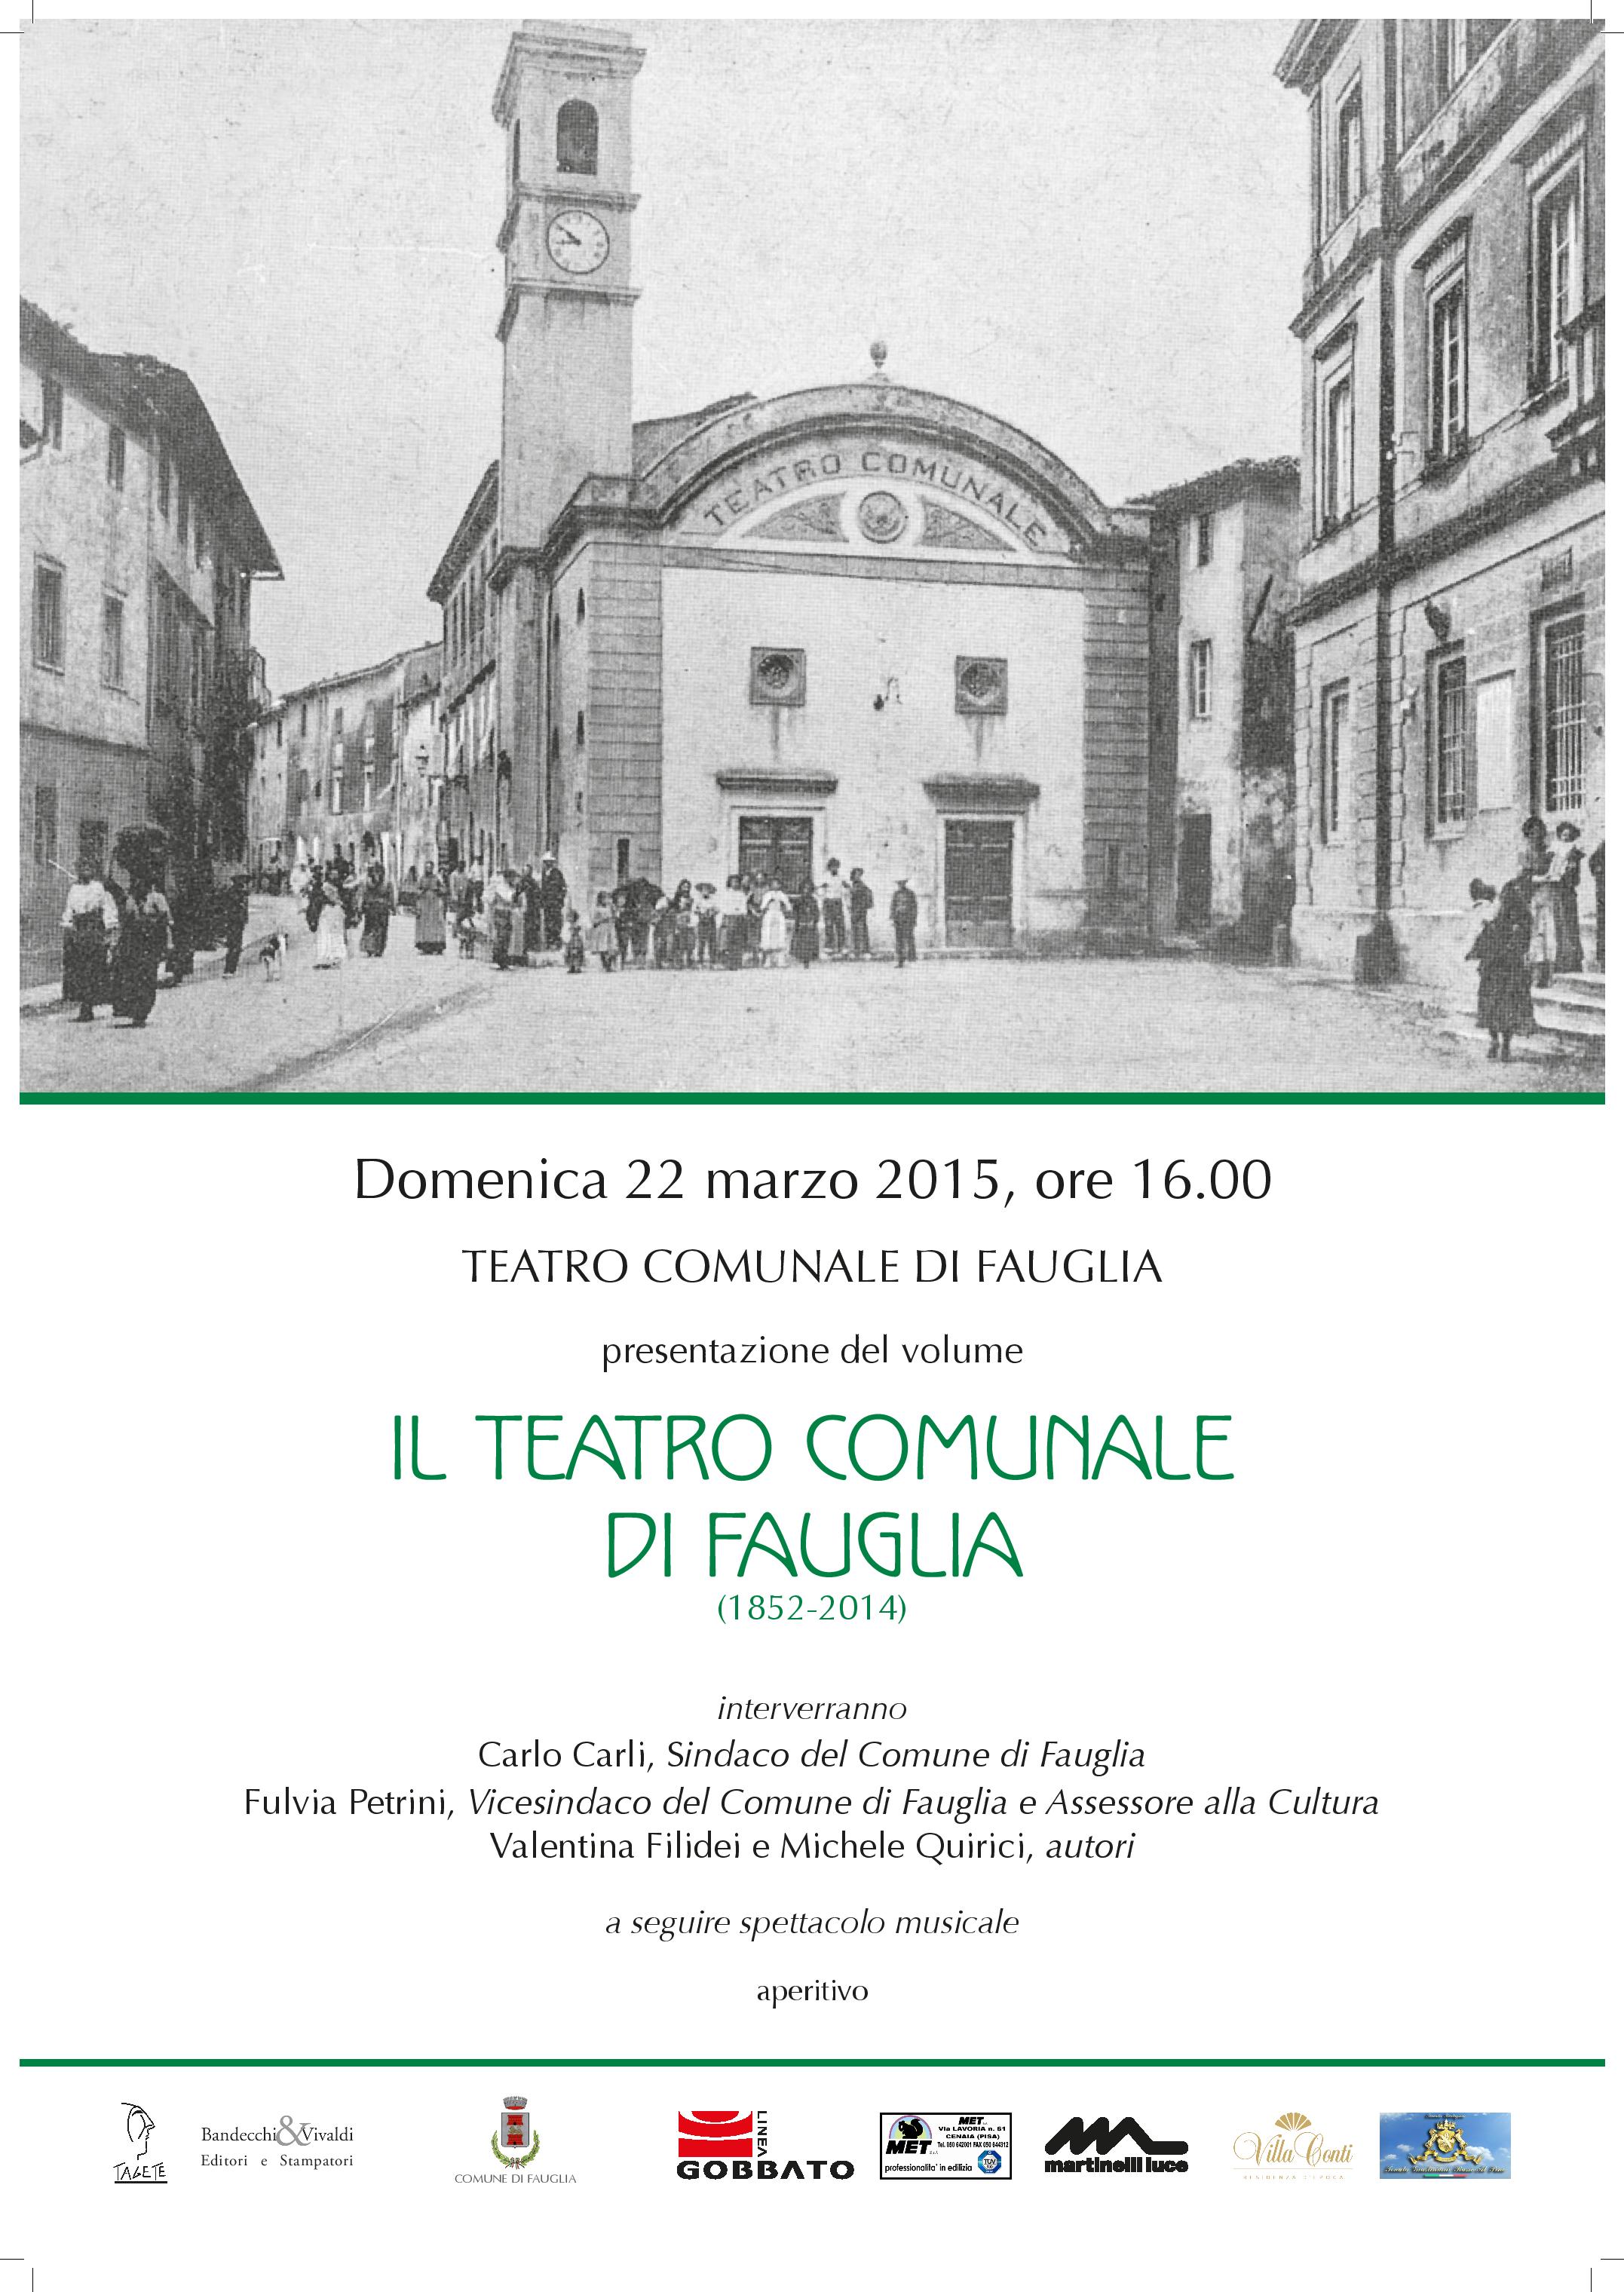 Teatro di Fauglia (1852-2014)